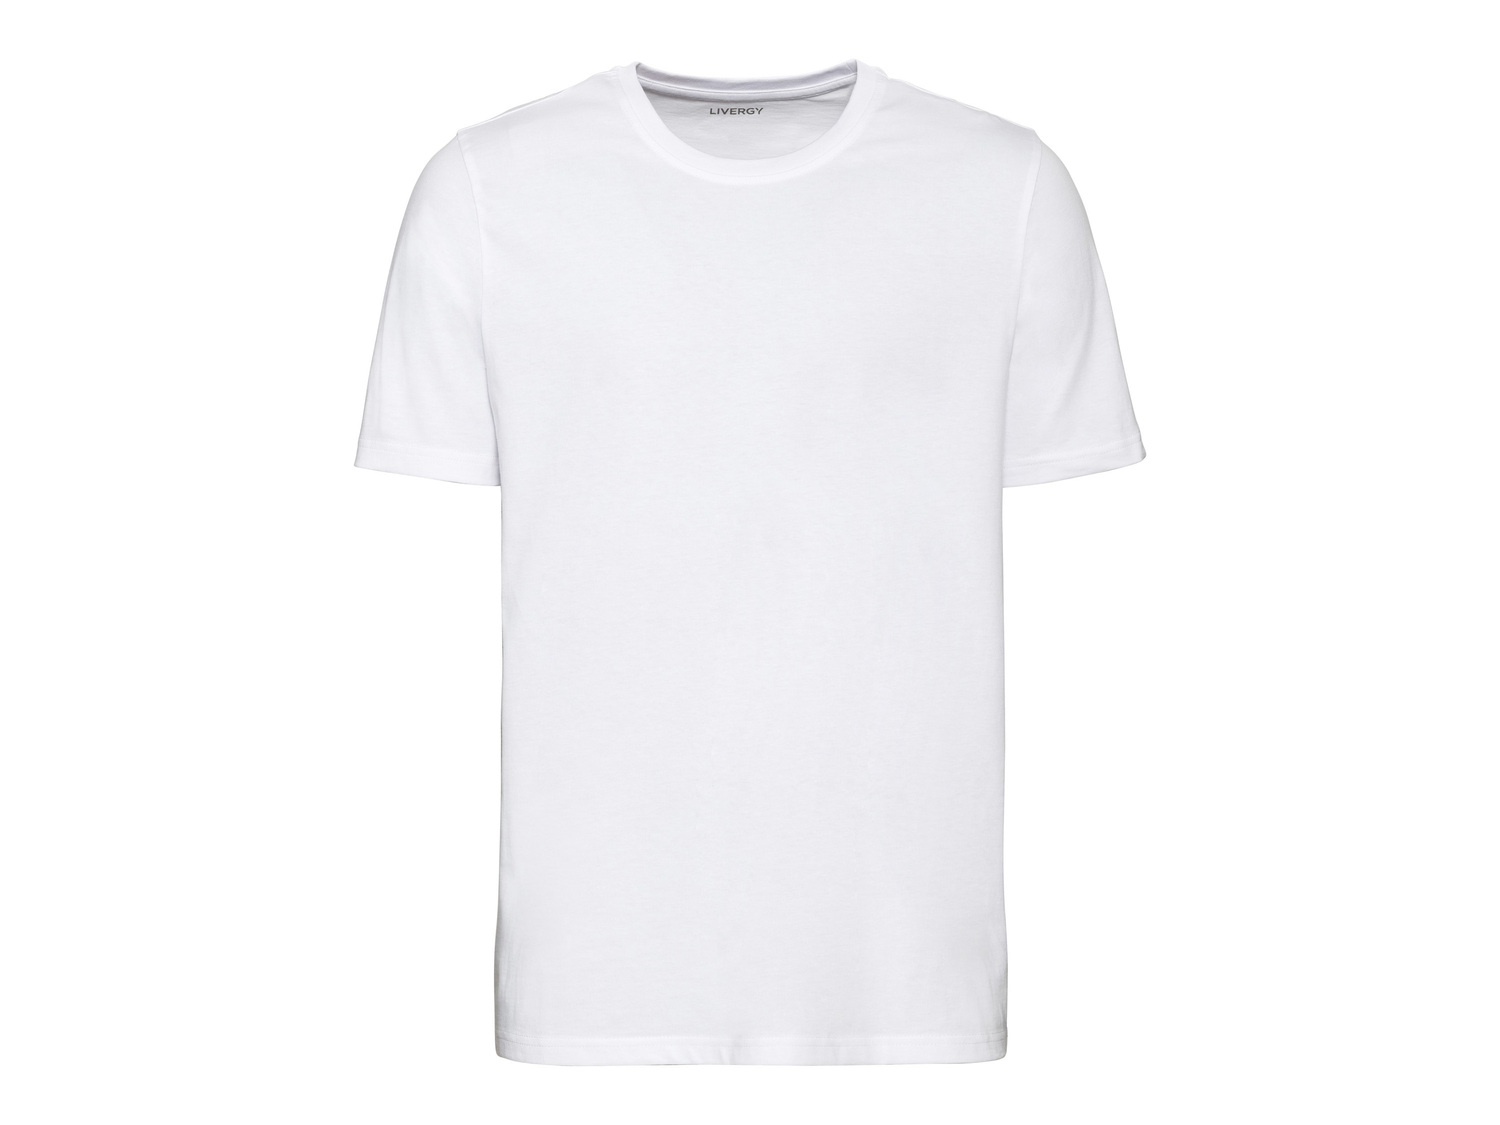 T-shirt da uomo, 2 pezzi Livergy, prezzo 6.99 € 
Misure: S-XL
Taglie disponibili

Caratteristiche

- ...